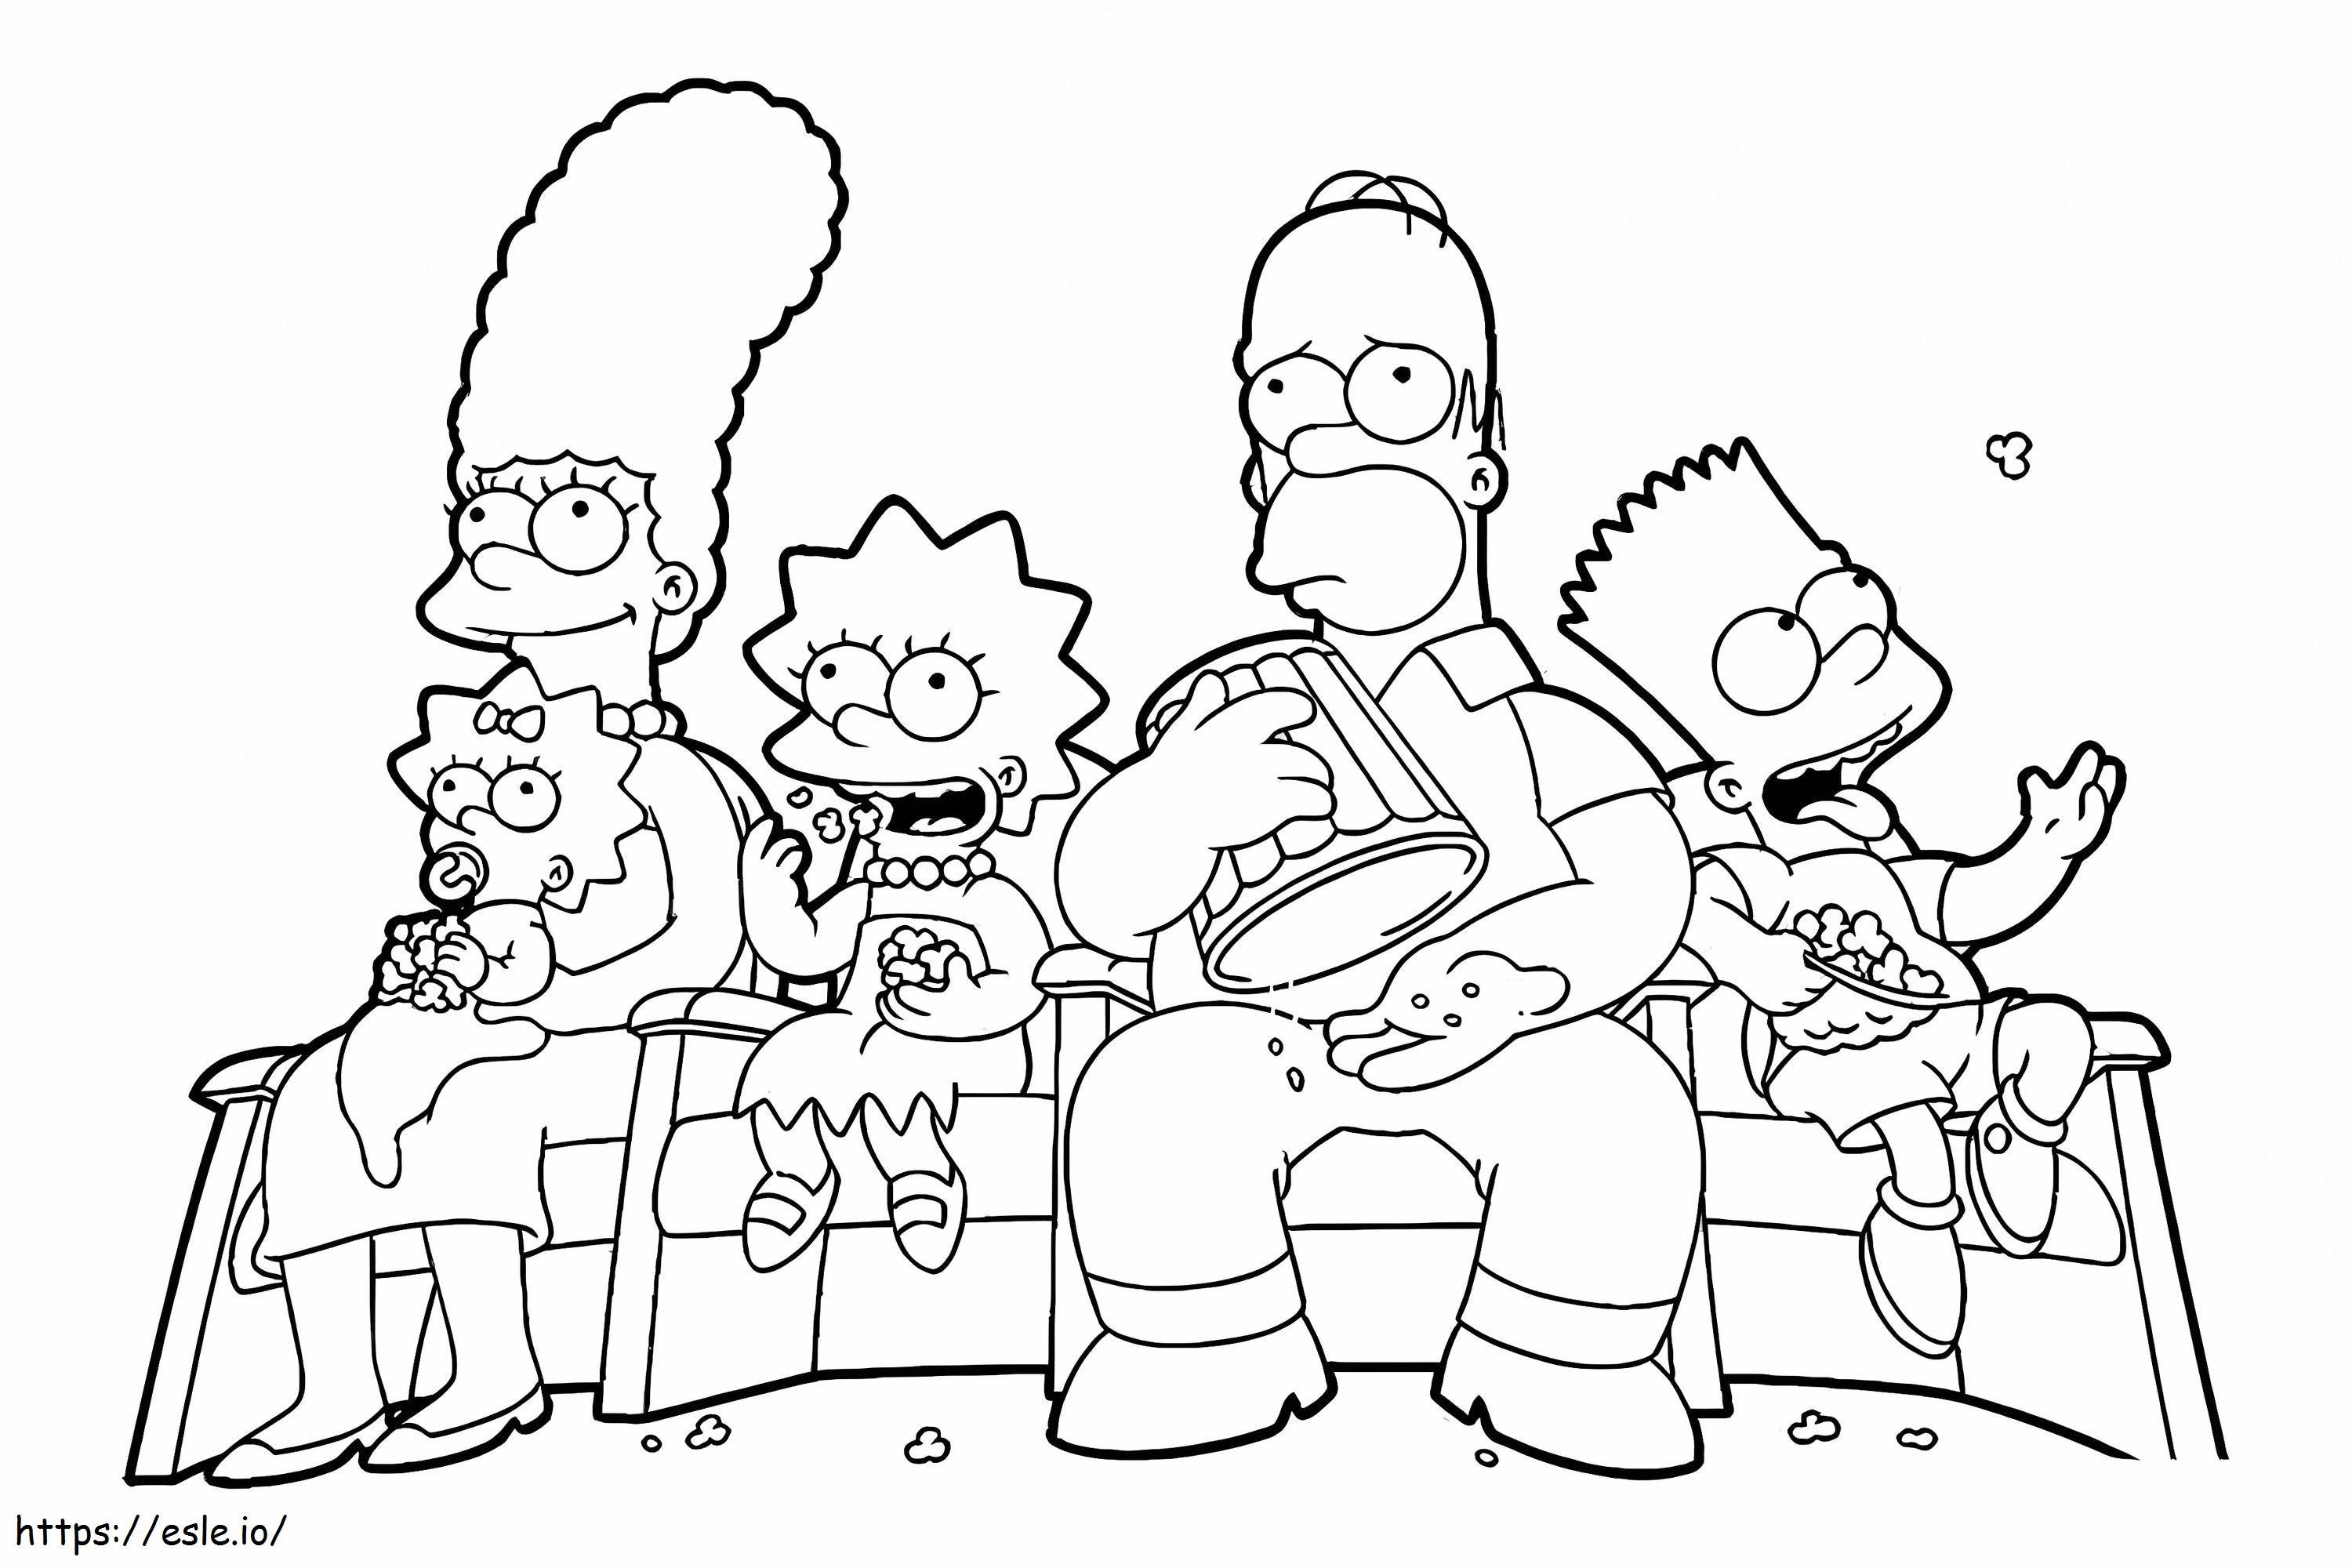 La familia Simpson viendo la película para colorear